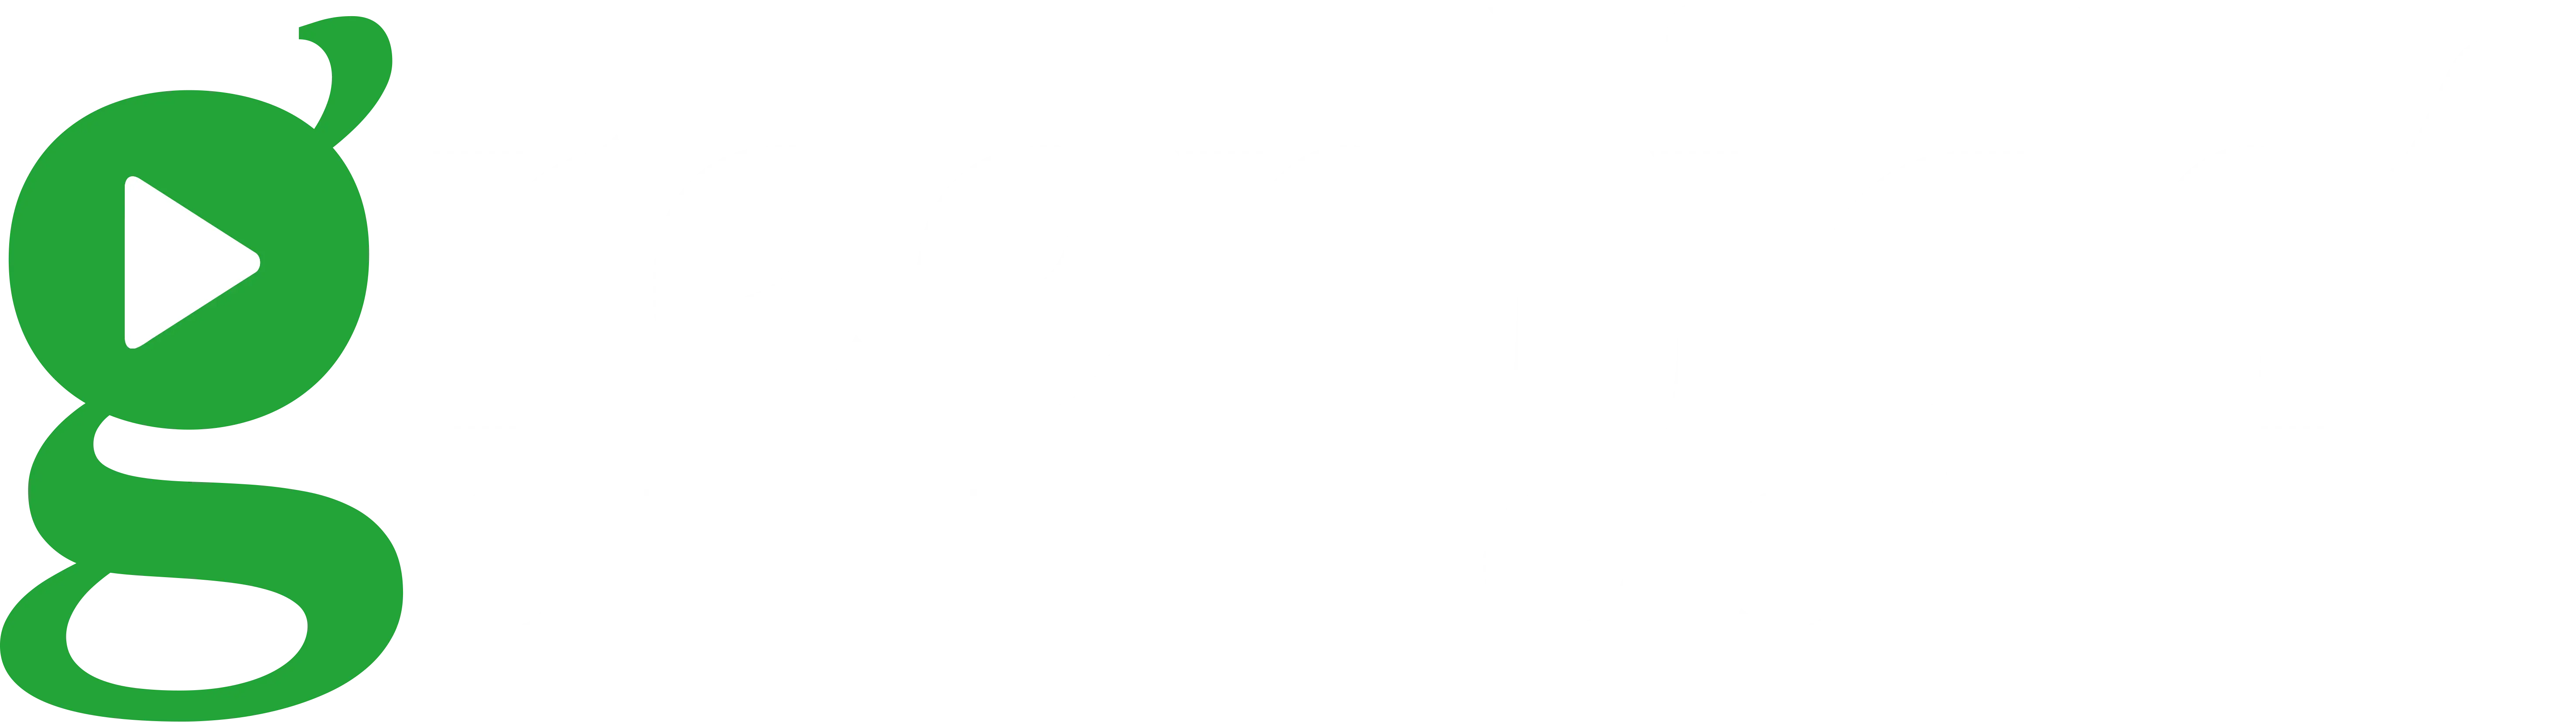 Green Light Studios